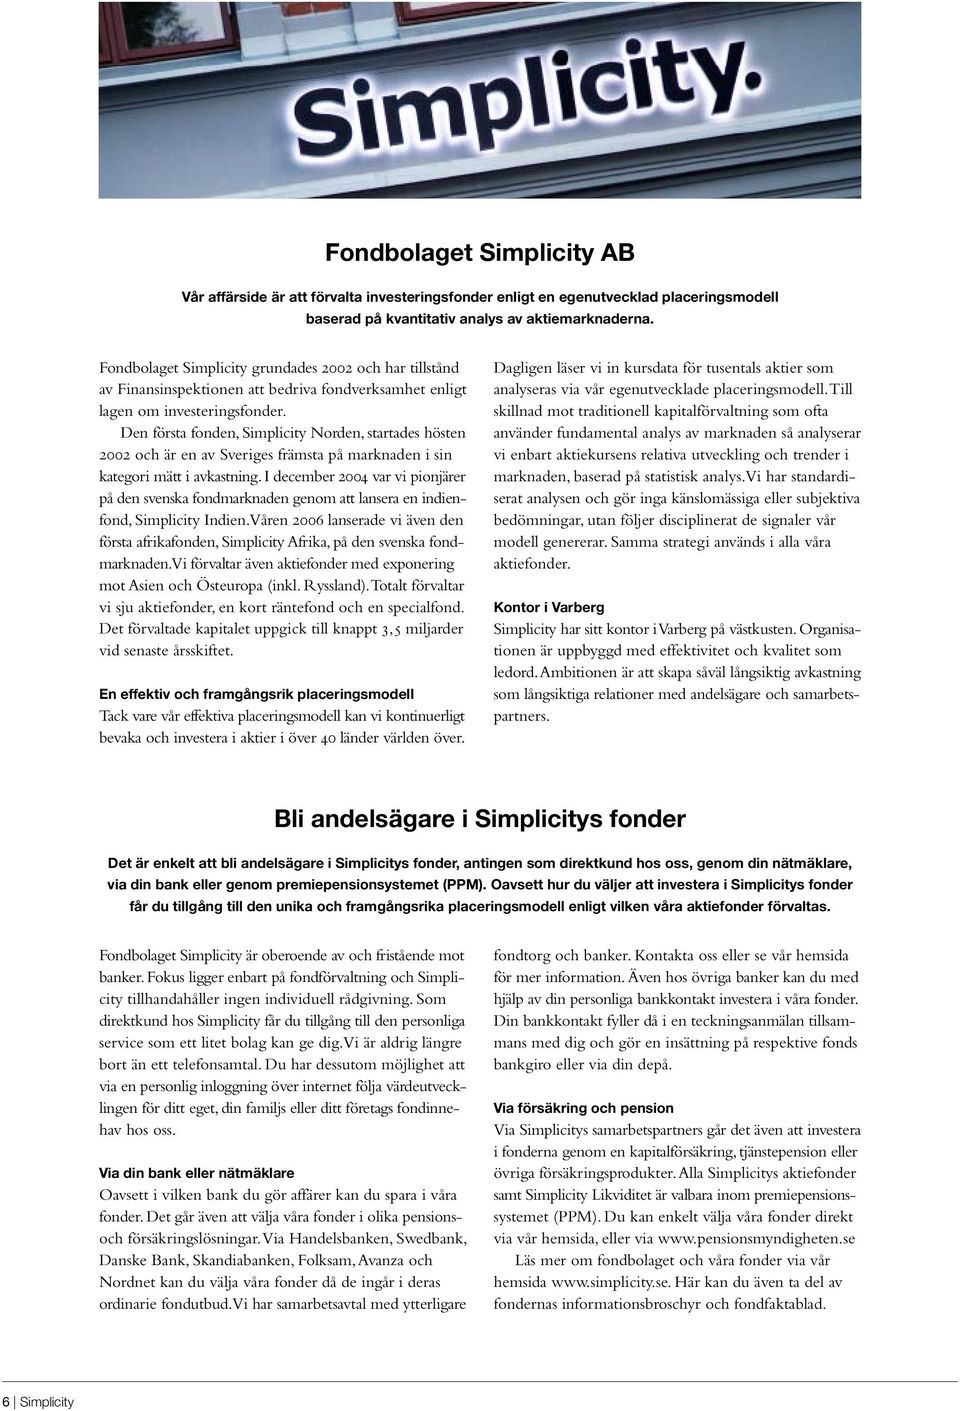 Den första fonden, Simplicity Norden, startades hösten 2002 och är en av Sveriges främsta på marknaden i sin kategori mätt i avkastning.